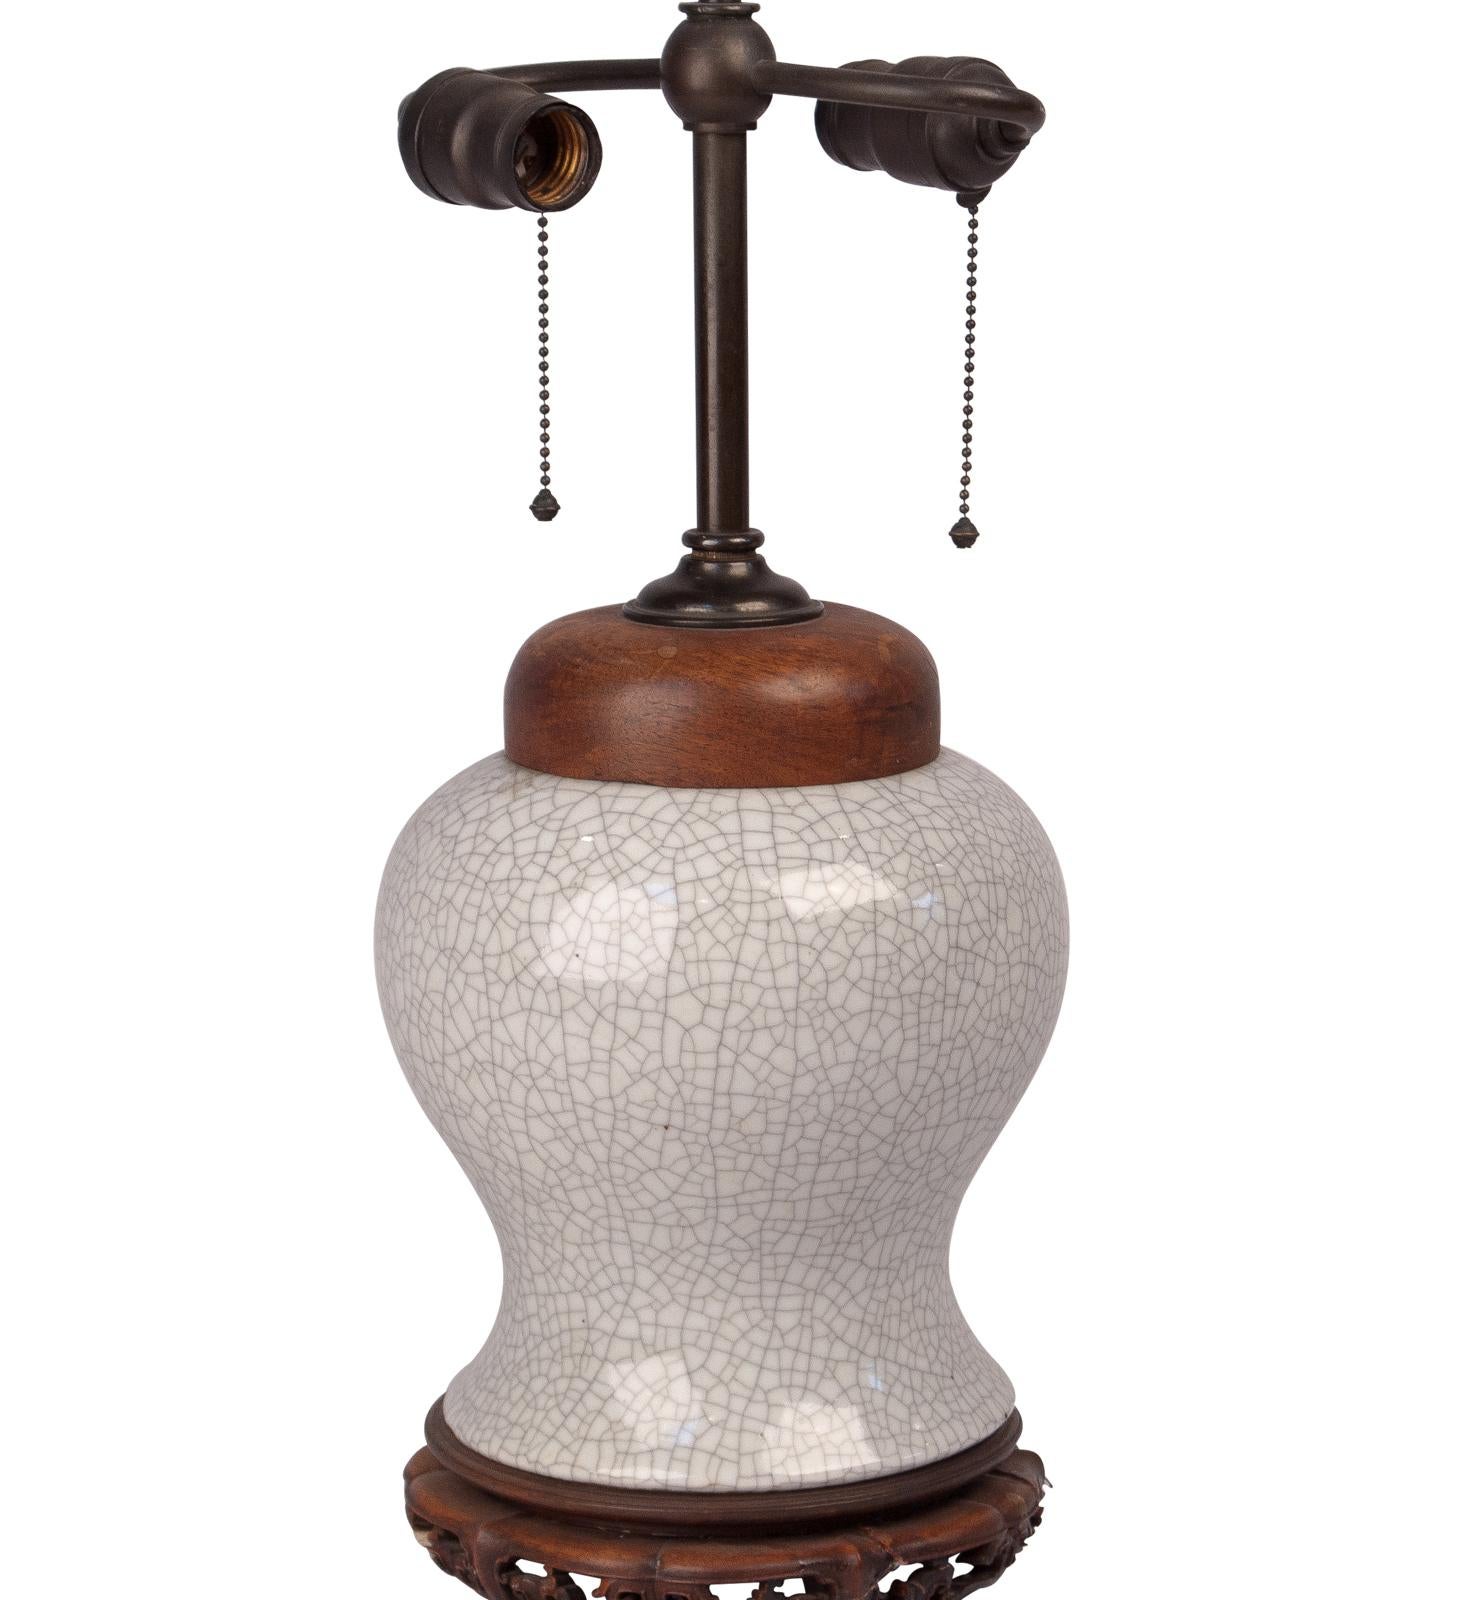 Chinese Guan Ware Vase Lamp, China, circa 1850